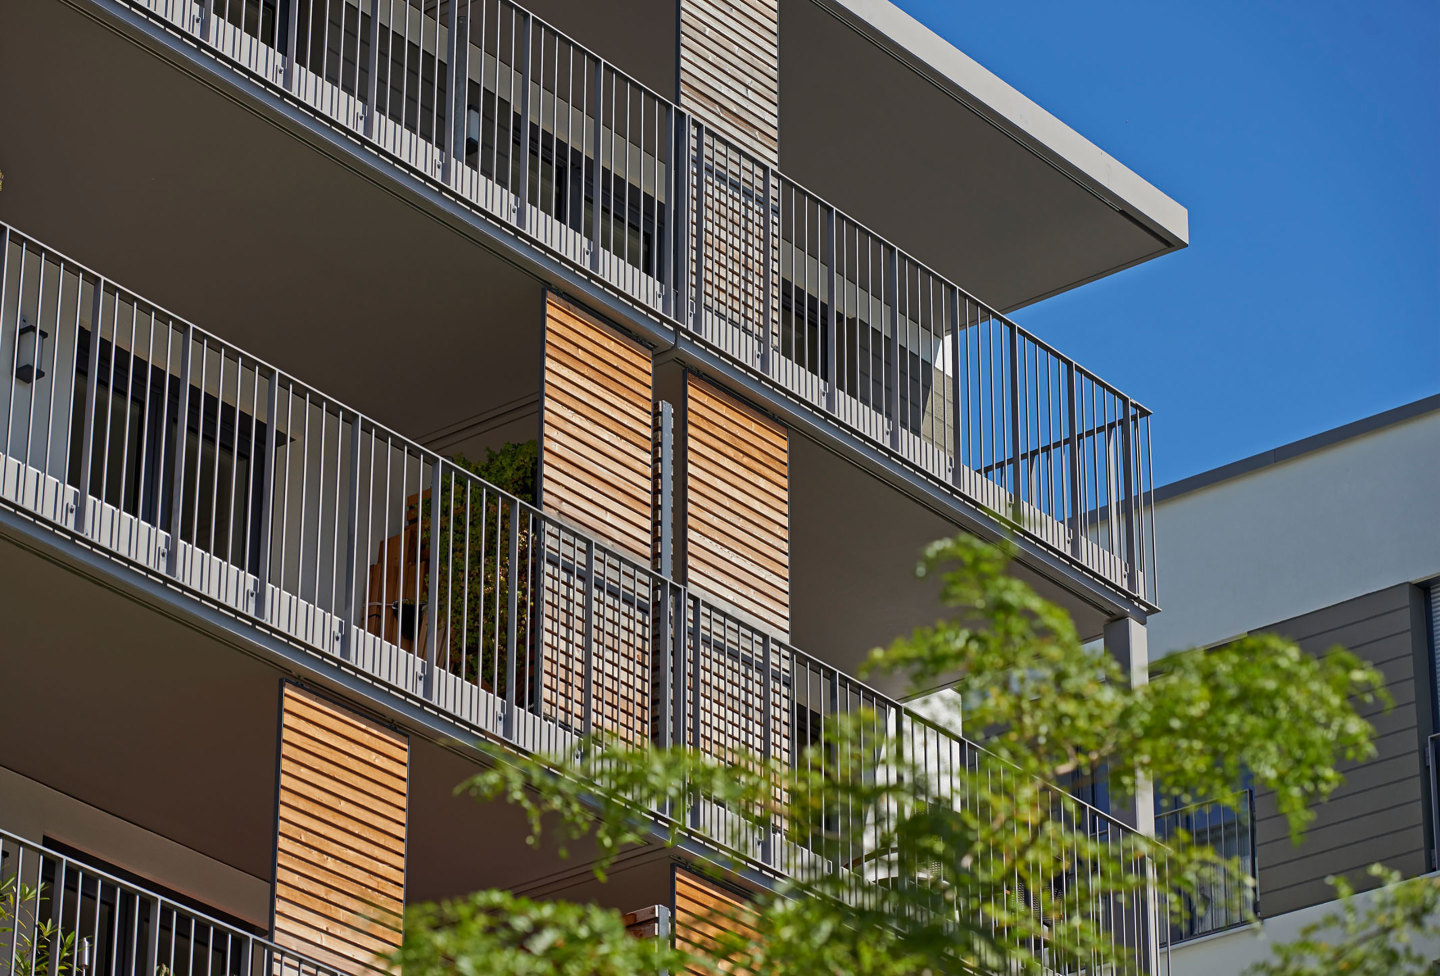 Foto: Balkonfront Donnersberger Hoefe mit Holzelementen und viel Grün